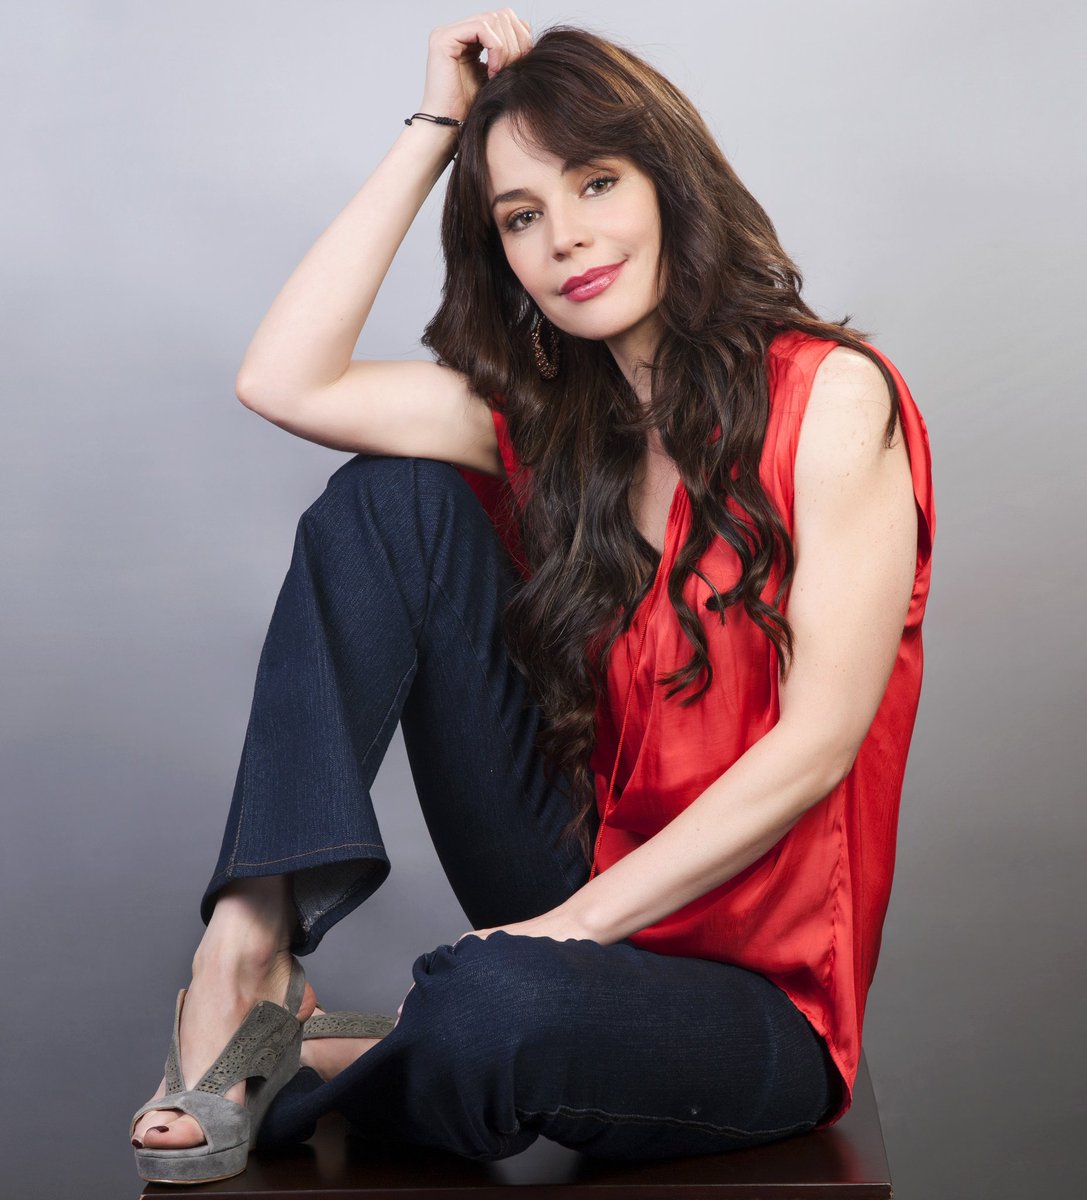 La cantante y actriz Flora Martínez lanzó “Lover Man” nuevo sencillo. -  